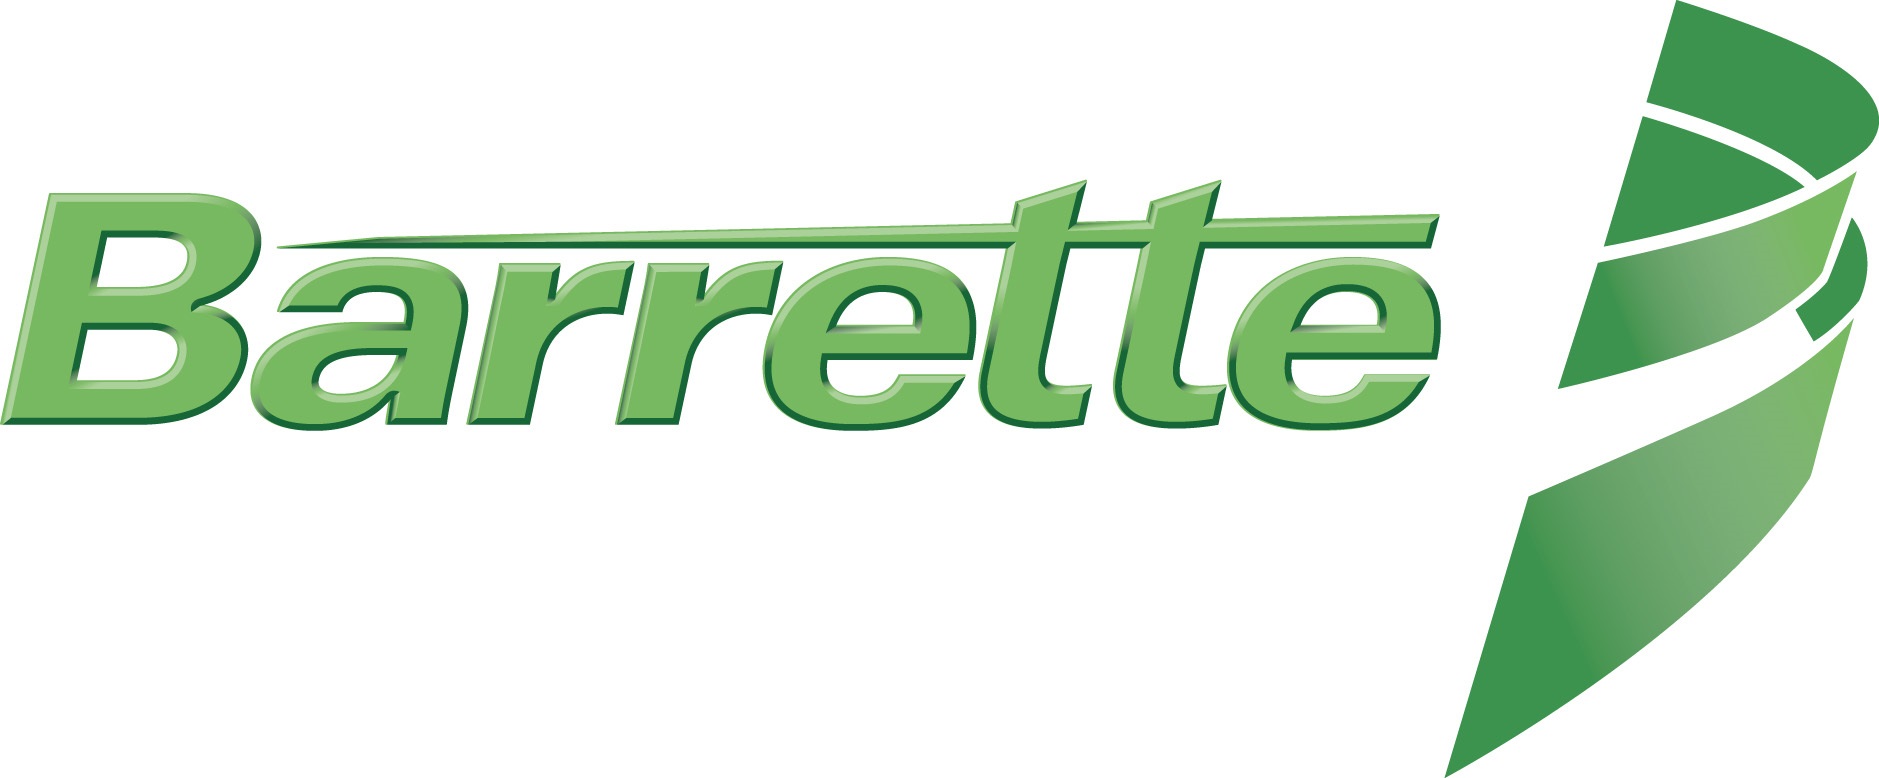 6213d74f98392 Barrette logo multi green 002